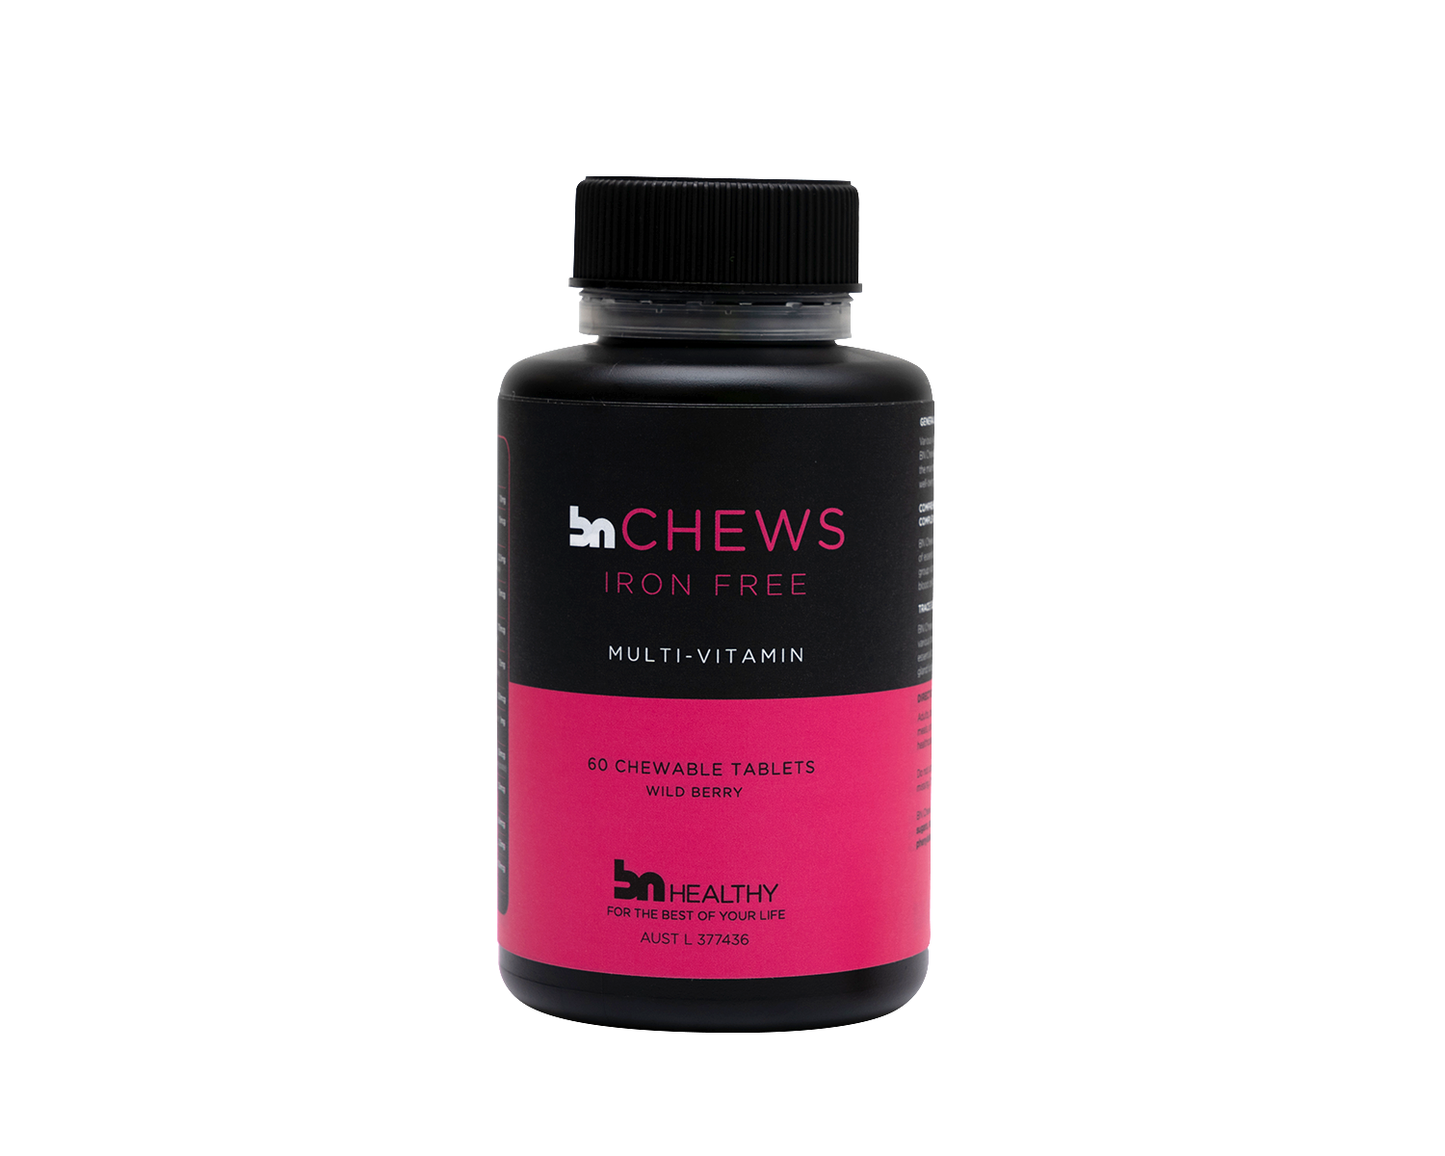 BN Chews Iron-Free - Chewable Multivitamins - 6 Bottles - Save 20%